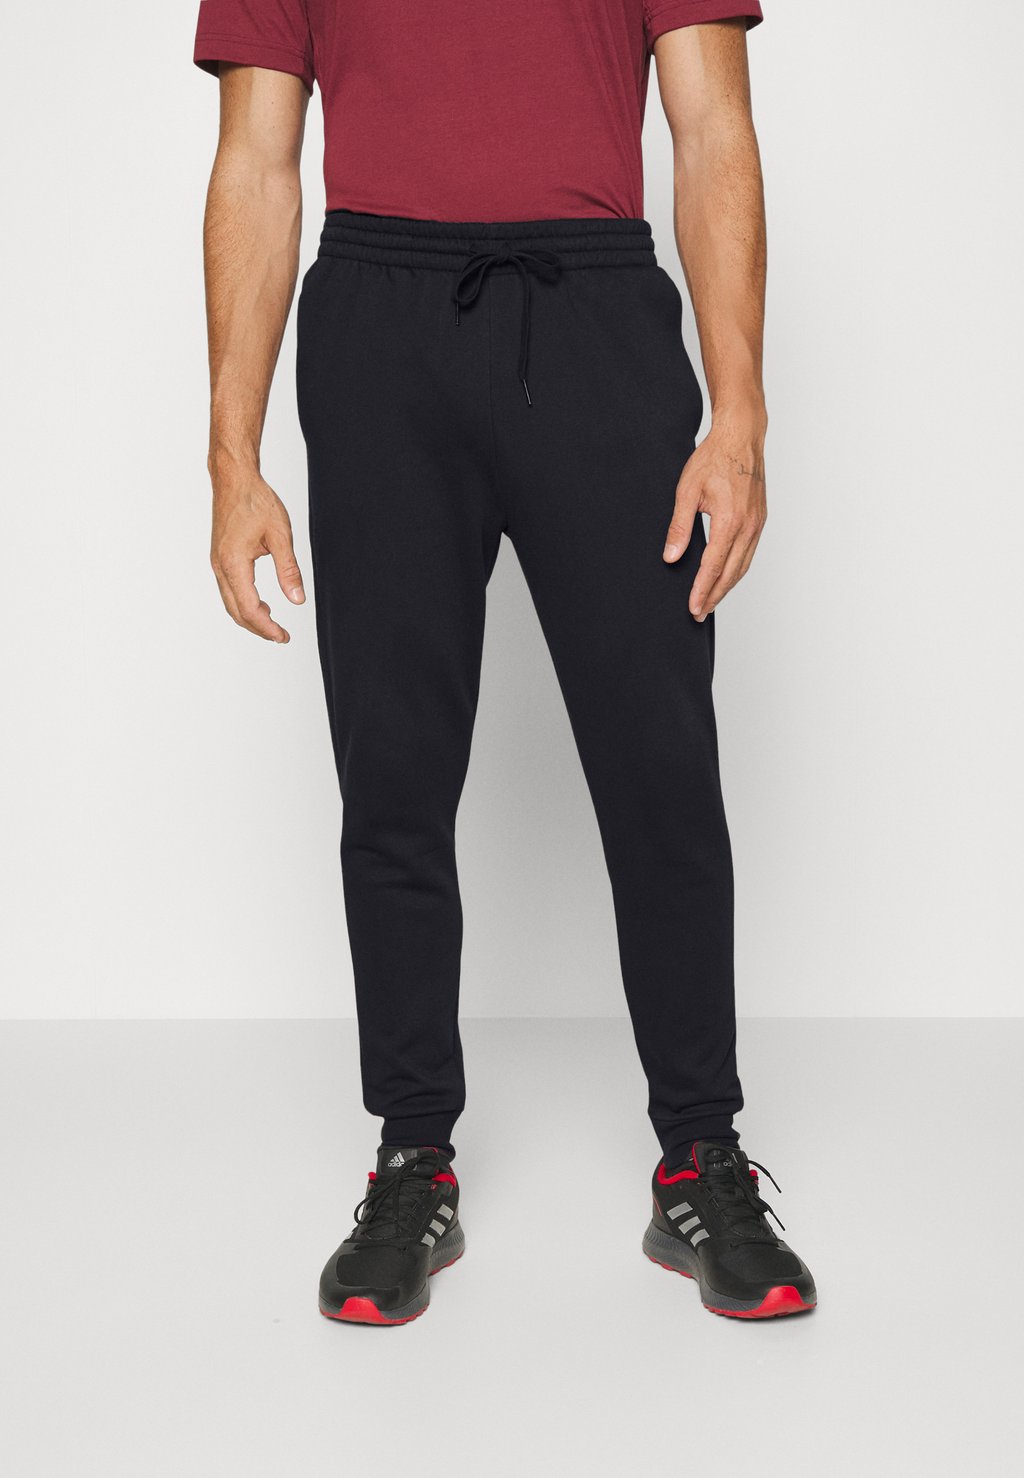 Спортивные брюки Adidas M Feelcozy Pant, черный / белый